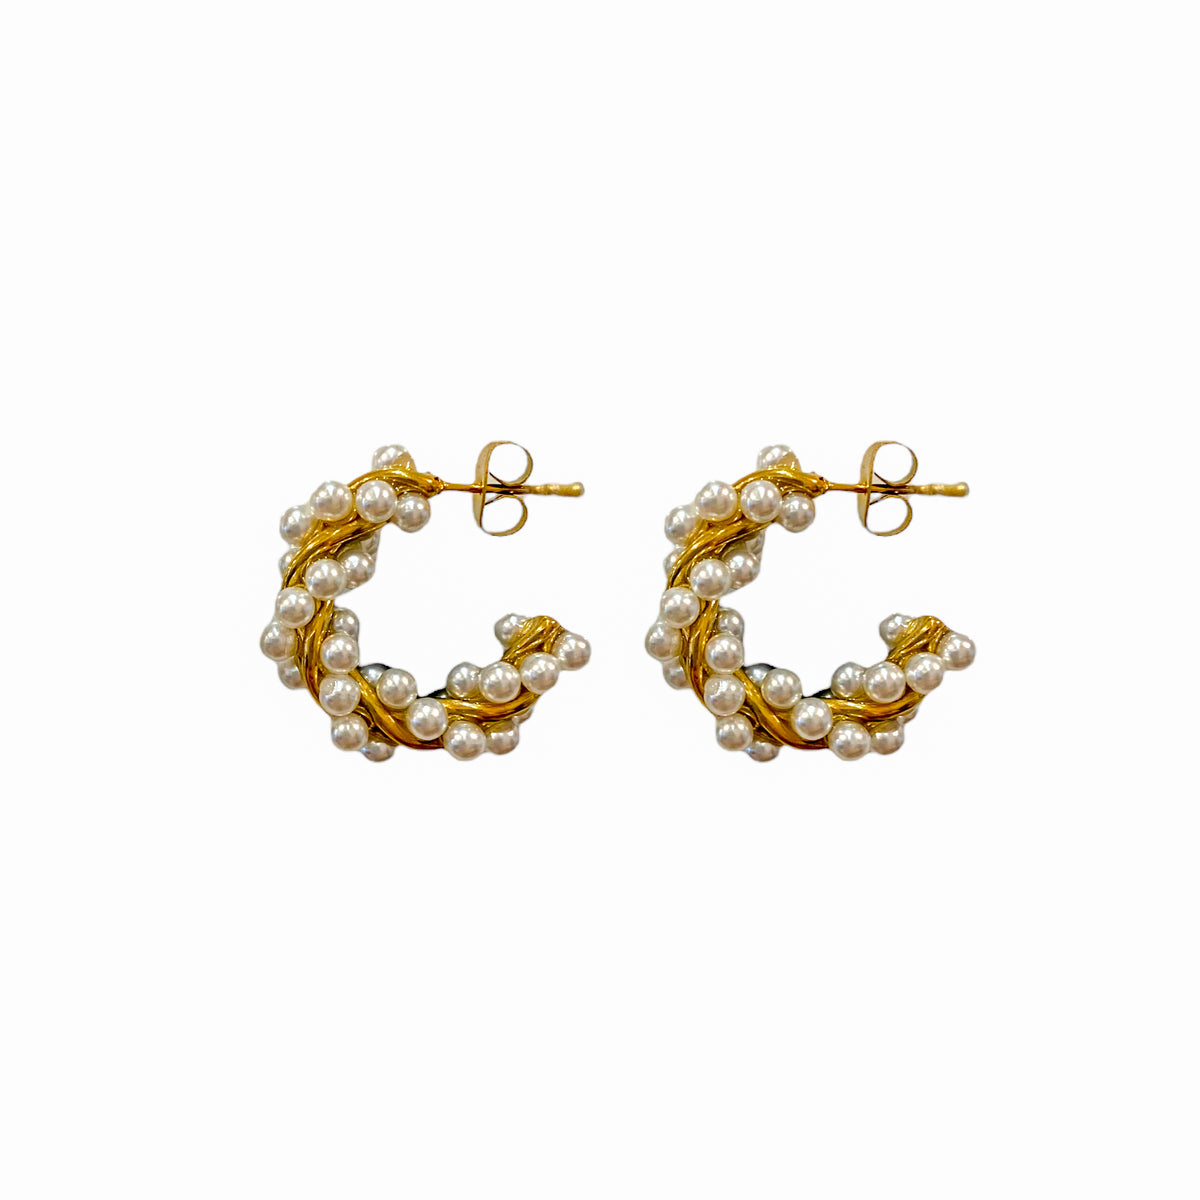 Chic Pearls Earrings Stud Hoops - Gold